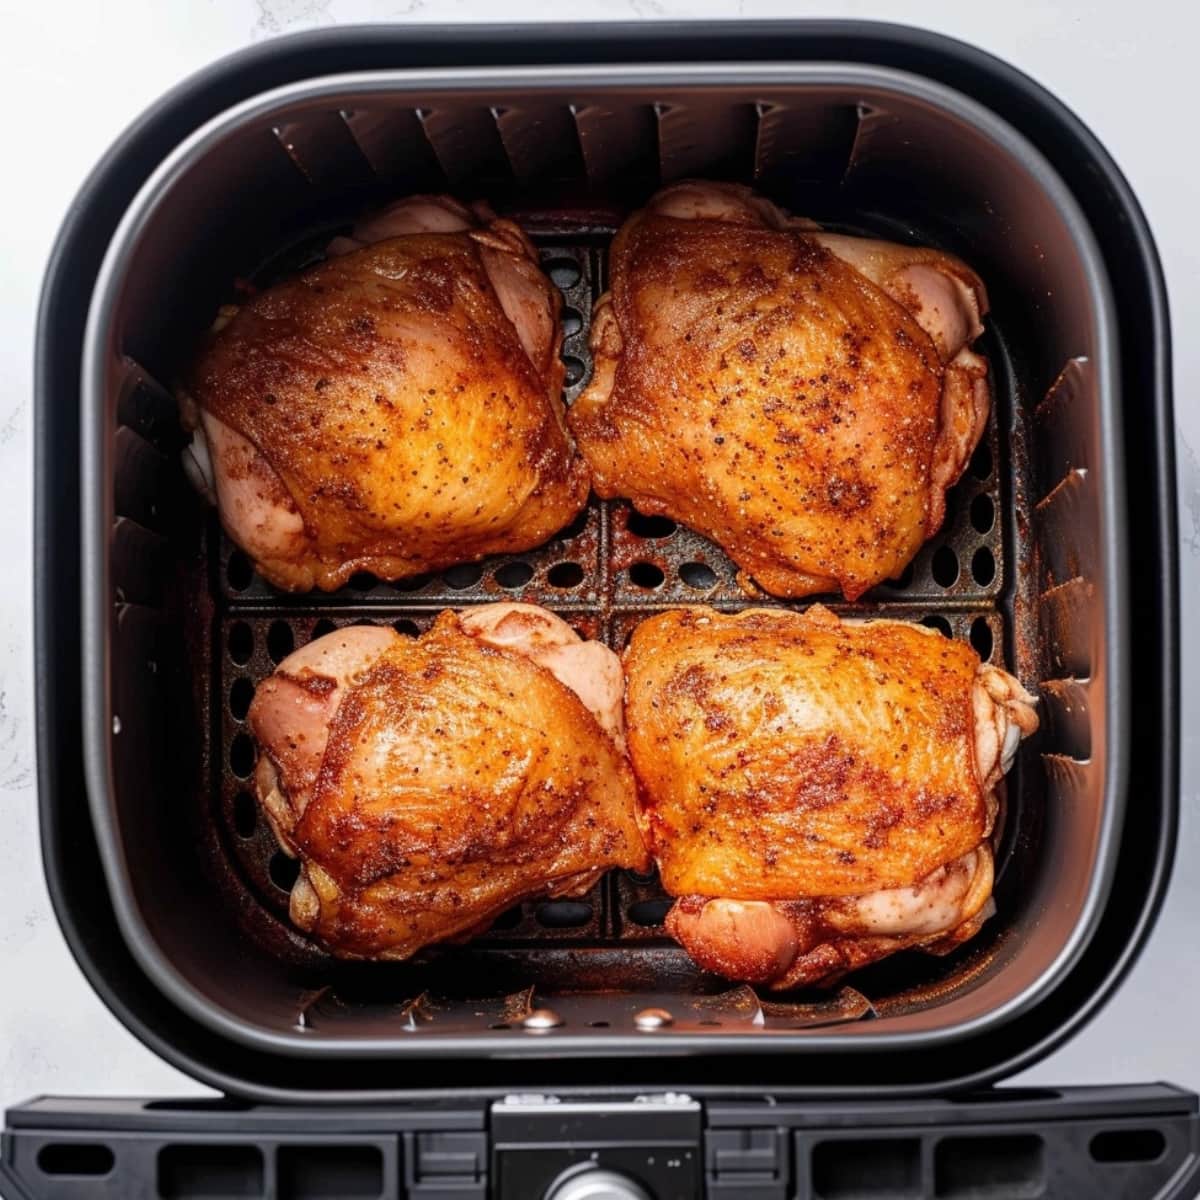 Seasoned chicken thighs inside an air fryer.